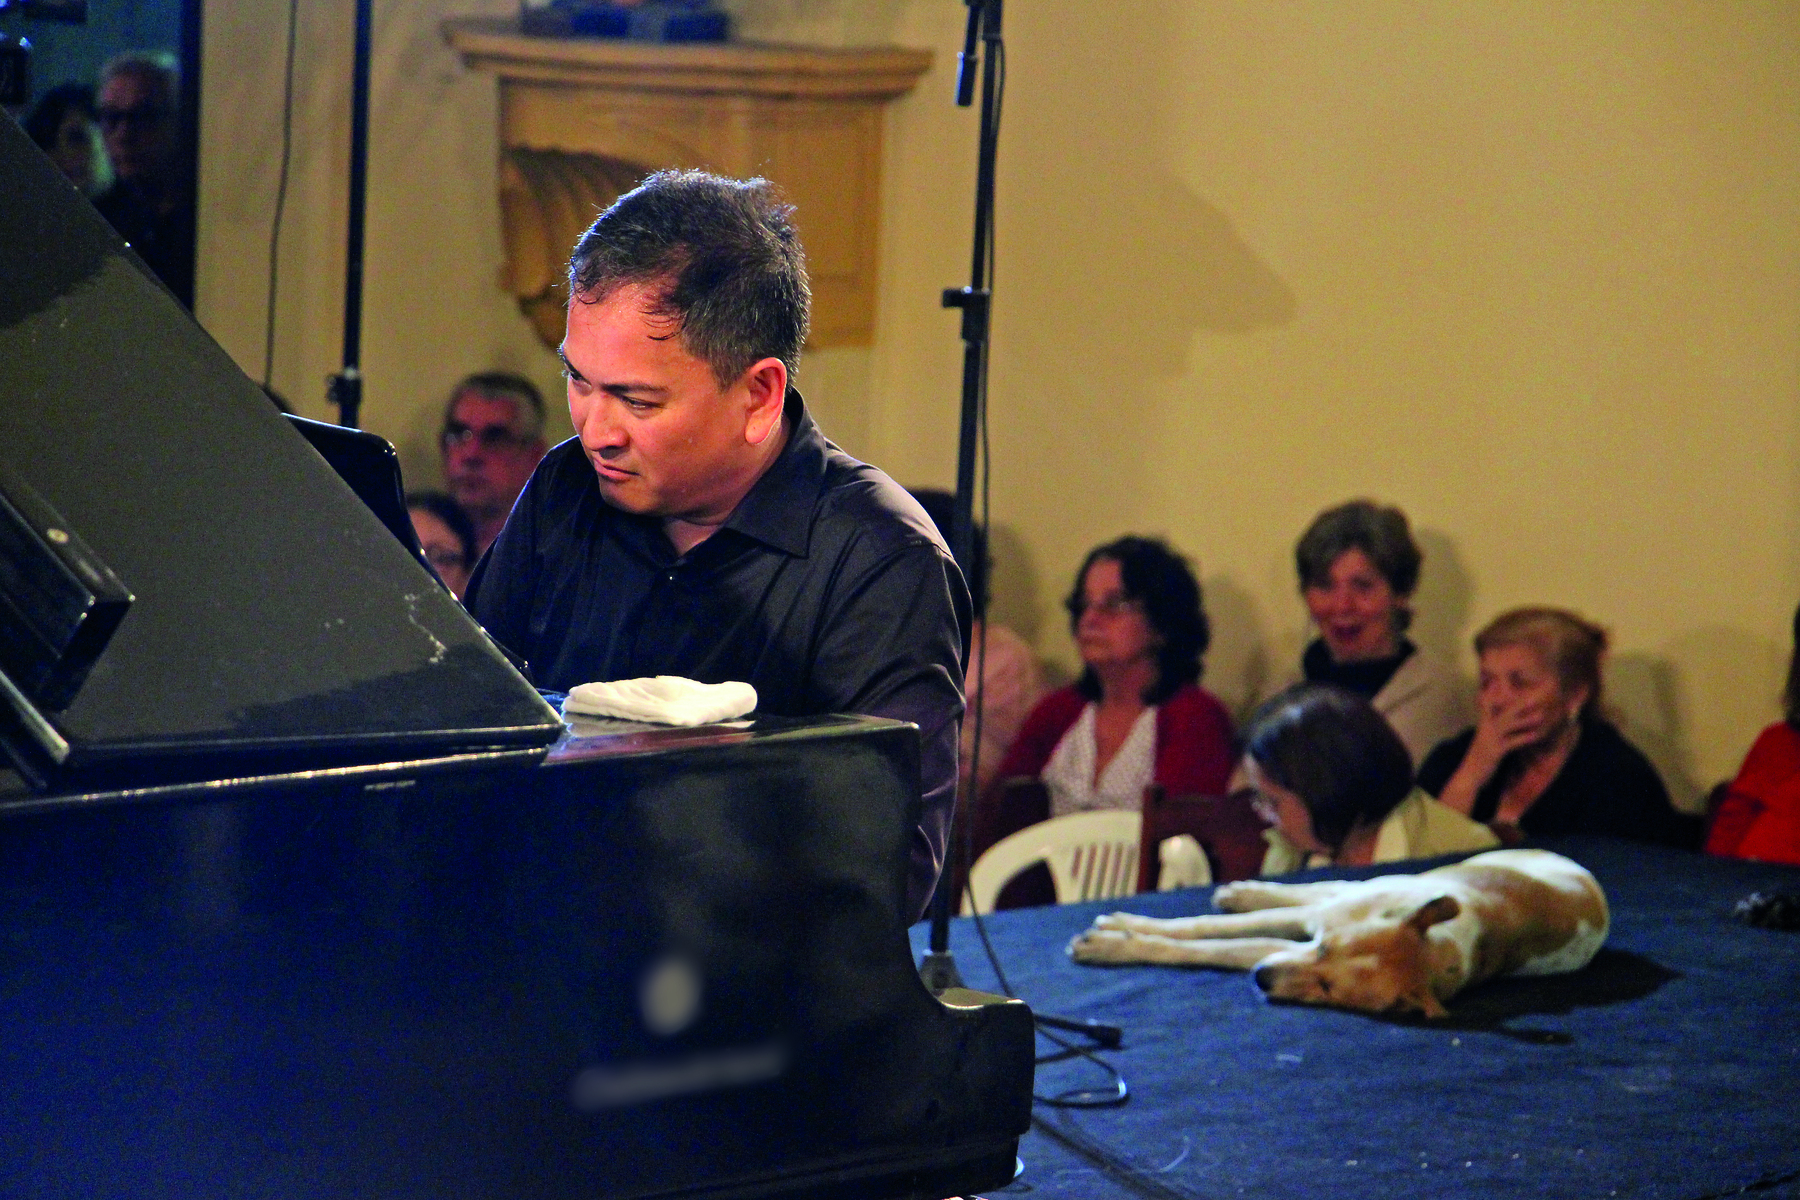 Fotografia. Apresentação musical. Um homem vestindo camisa preta está sentado, tocando um piano de cauda, que aparece parcialmente. Ao lado dele há uma cachorrinha de pelo branco e manchas castanhas deitada de lado. Ao fundo, algumas pessoas sentadas assistem à apresentação.